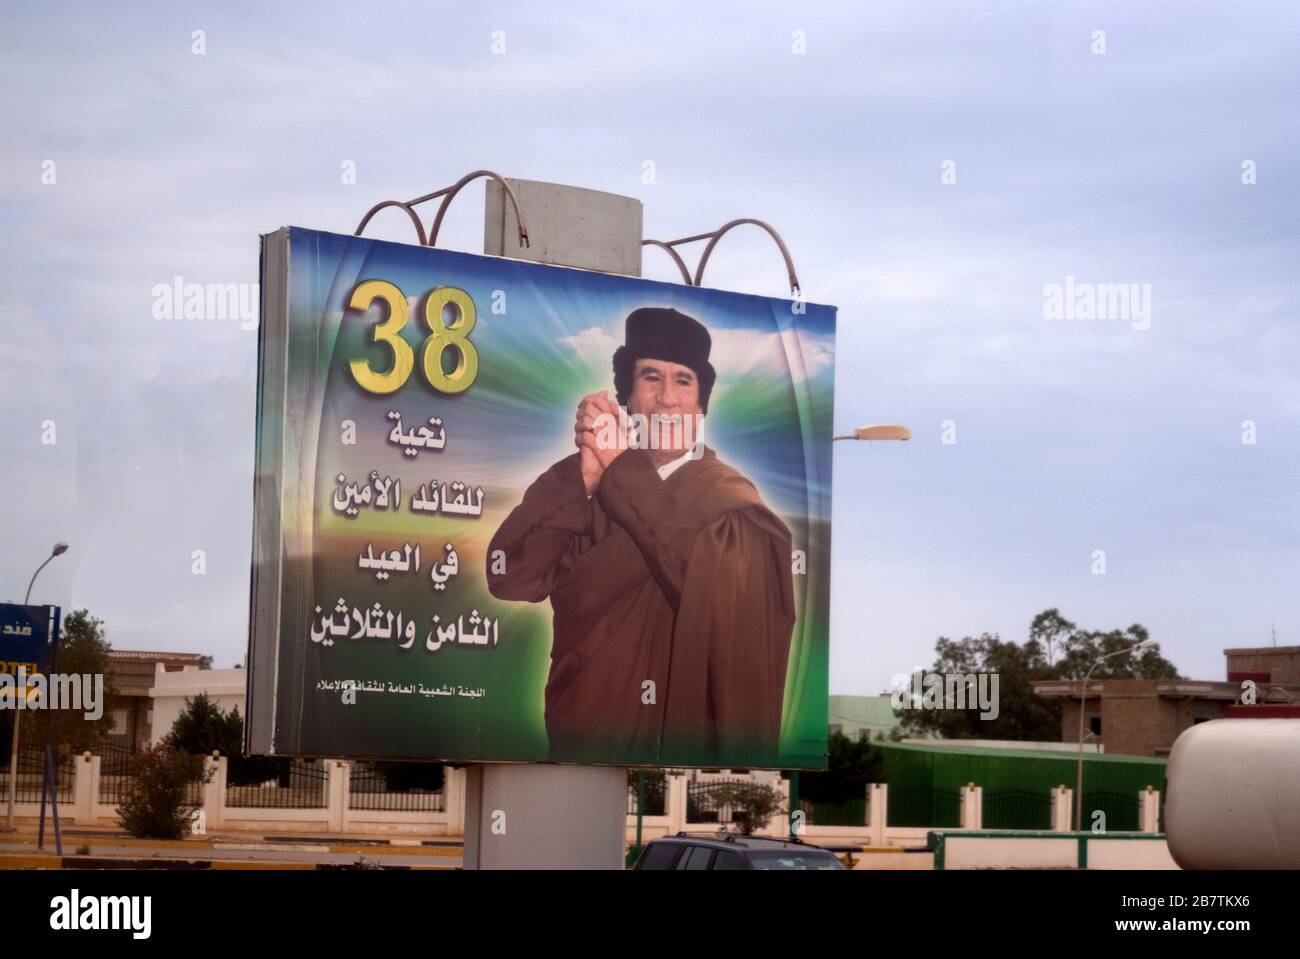 Plakat feiert 38 Jahre der Herrschaft von Oberst Gaddafi, geplant für mehr in der Zukunft, Sousse, Libyen, Oktober 2007. Stockfoto